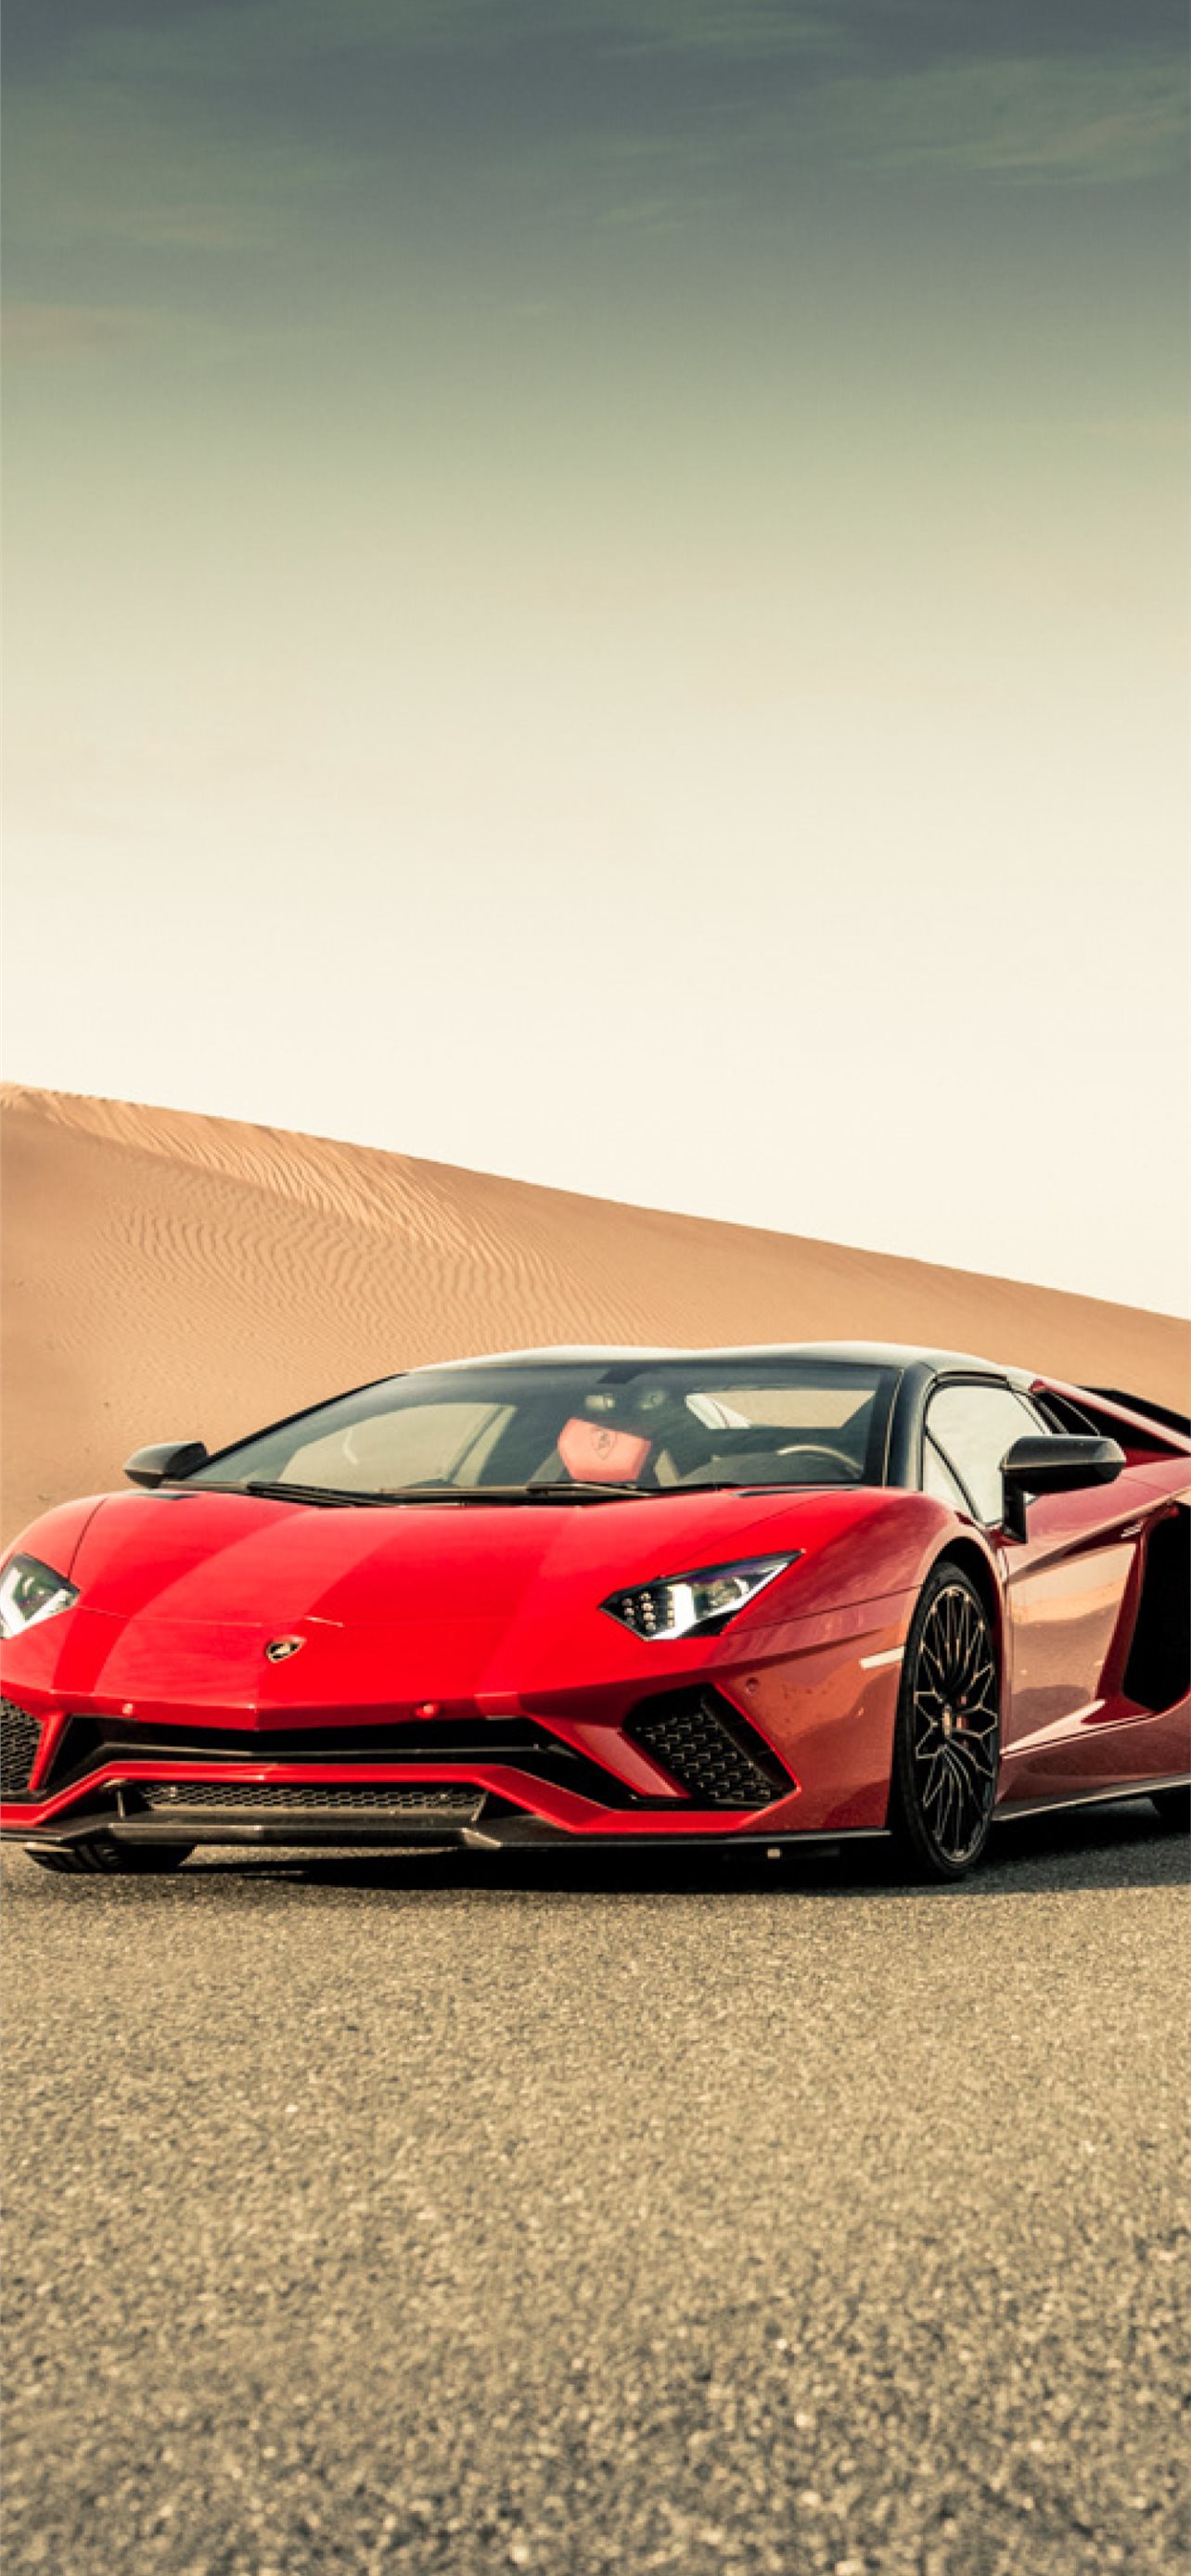 Lamborghini Aventador S Resolution HD Cars 4K Imag... iPhone Wallpapers  Free Download